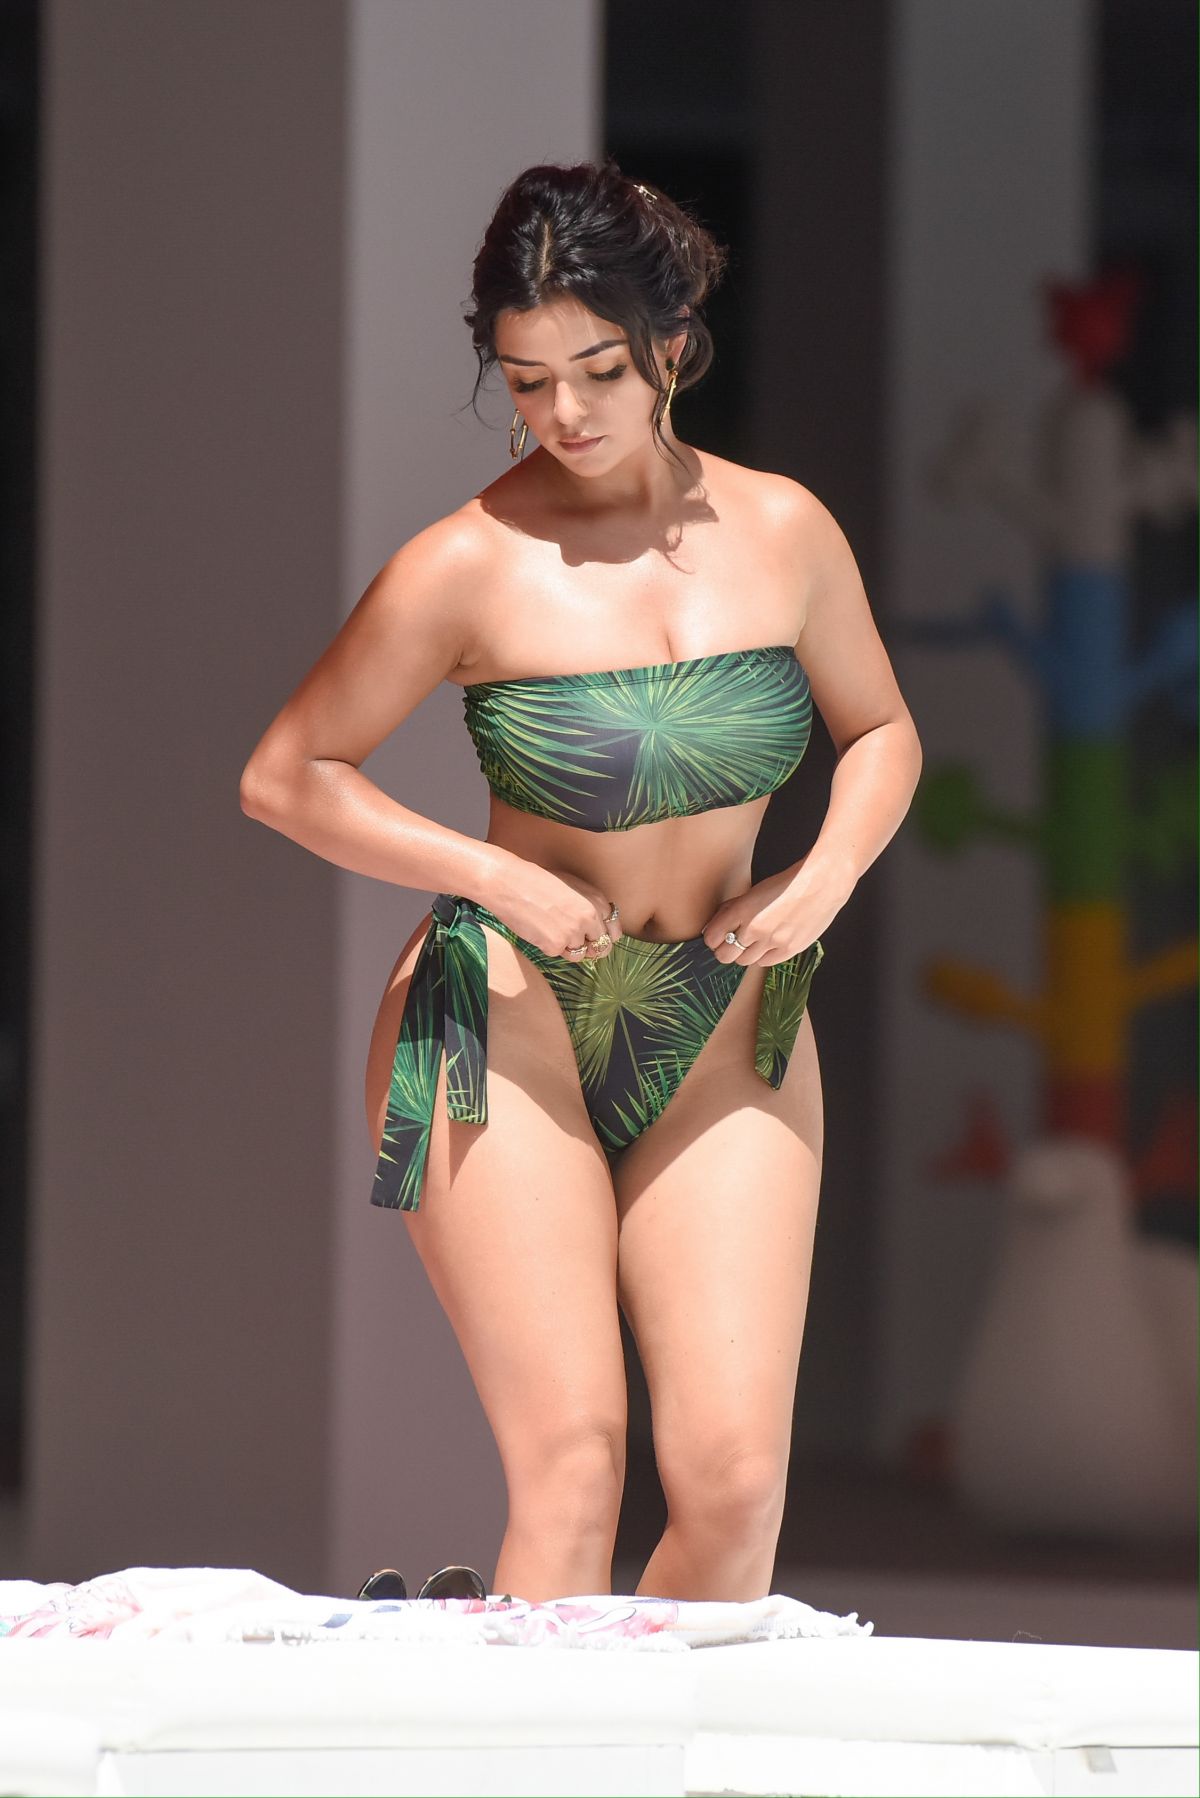 Demi Rose Mawby In Bikini At A Pool In Spain 08 21 2020